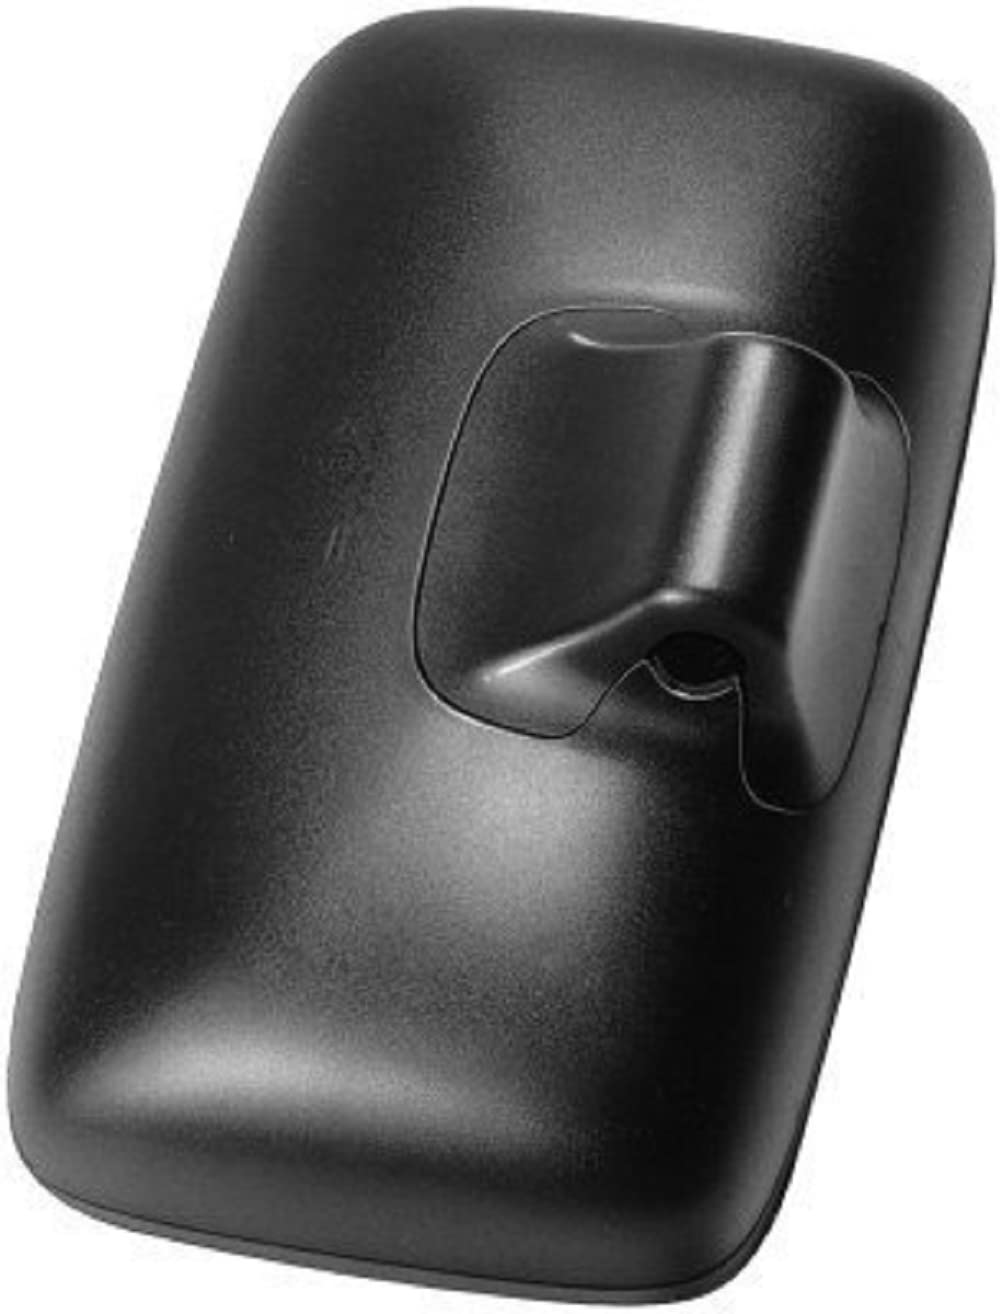 HELLA - Außenspiegel - verstellbar - Kunststoffgehäuse - schwarz - Breite: 195mm - Höhe: 336mm - beidseitig - 8SB 501 358-002 von Hella